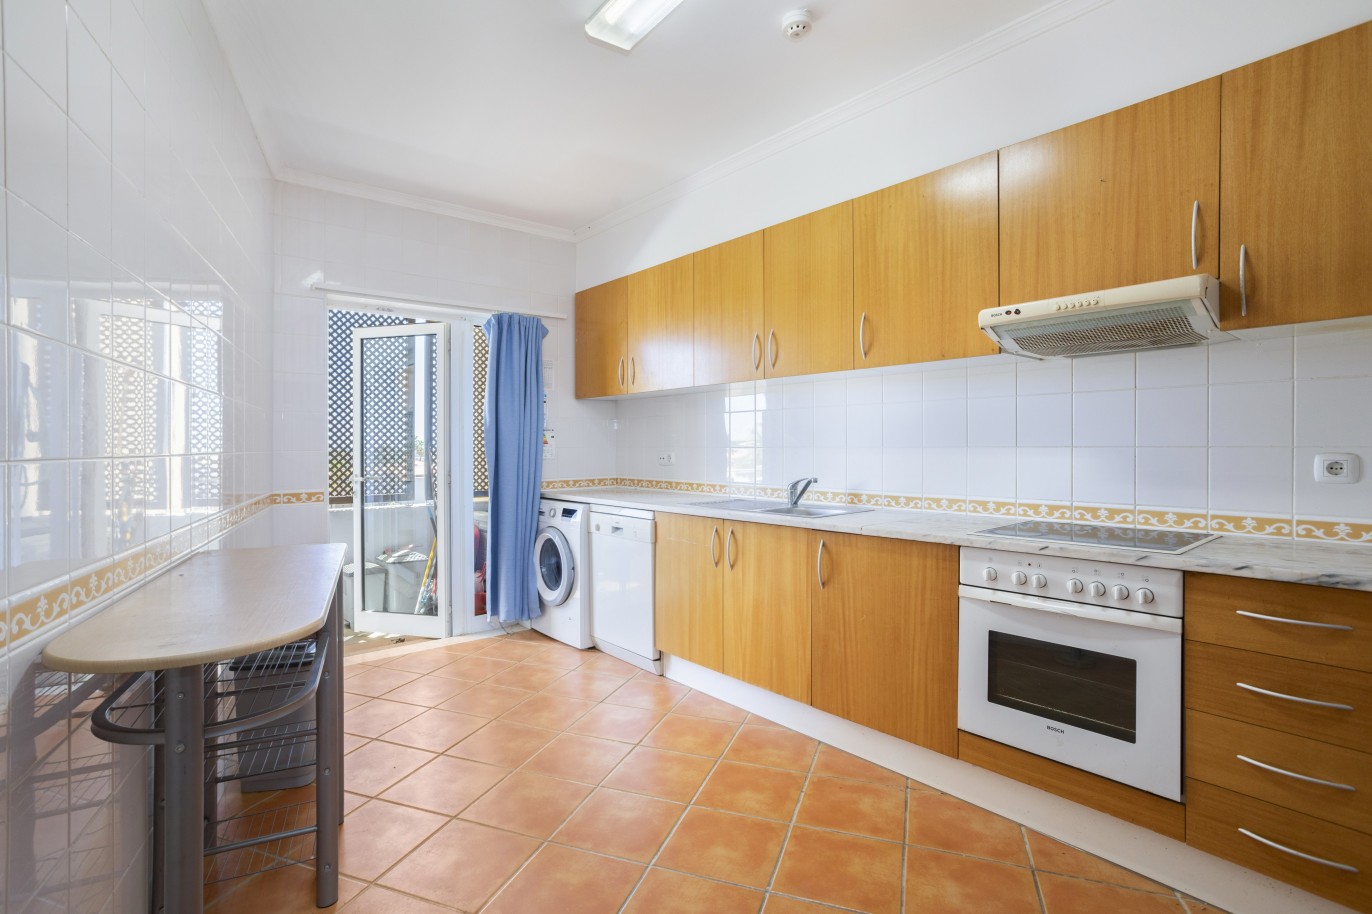 Piso de 3 dormitorios en condominio cerrado, en venta en vilamoura, Algarve_224428